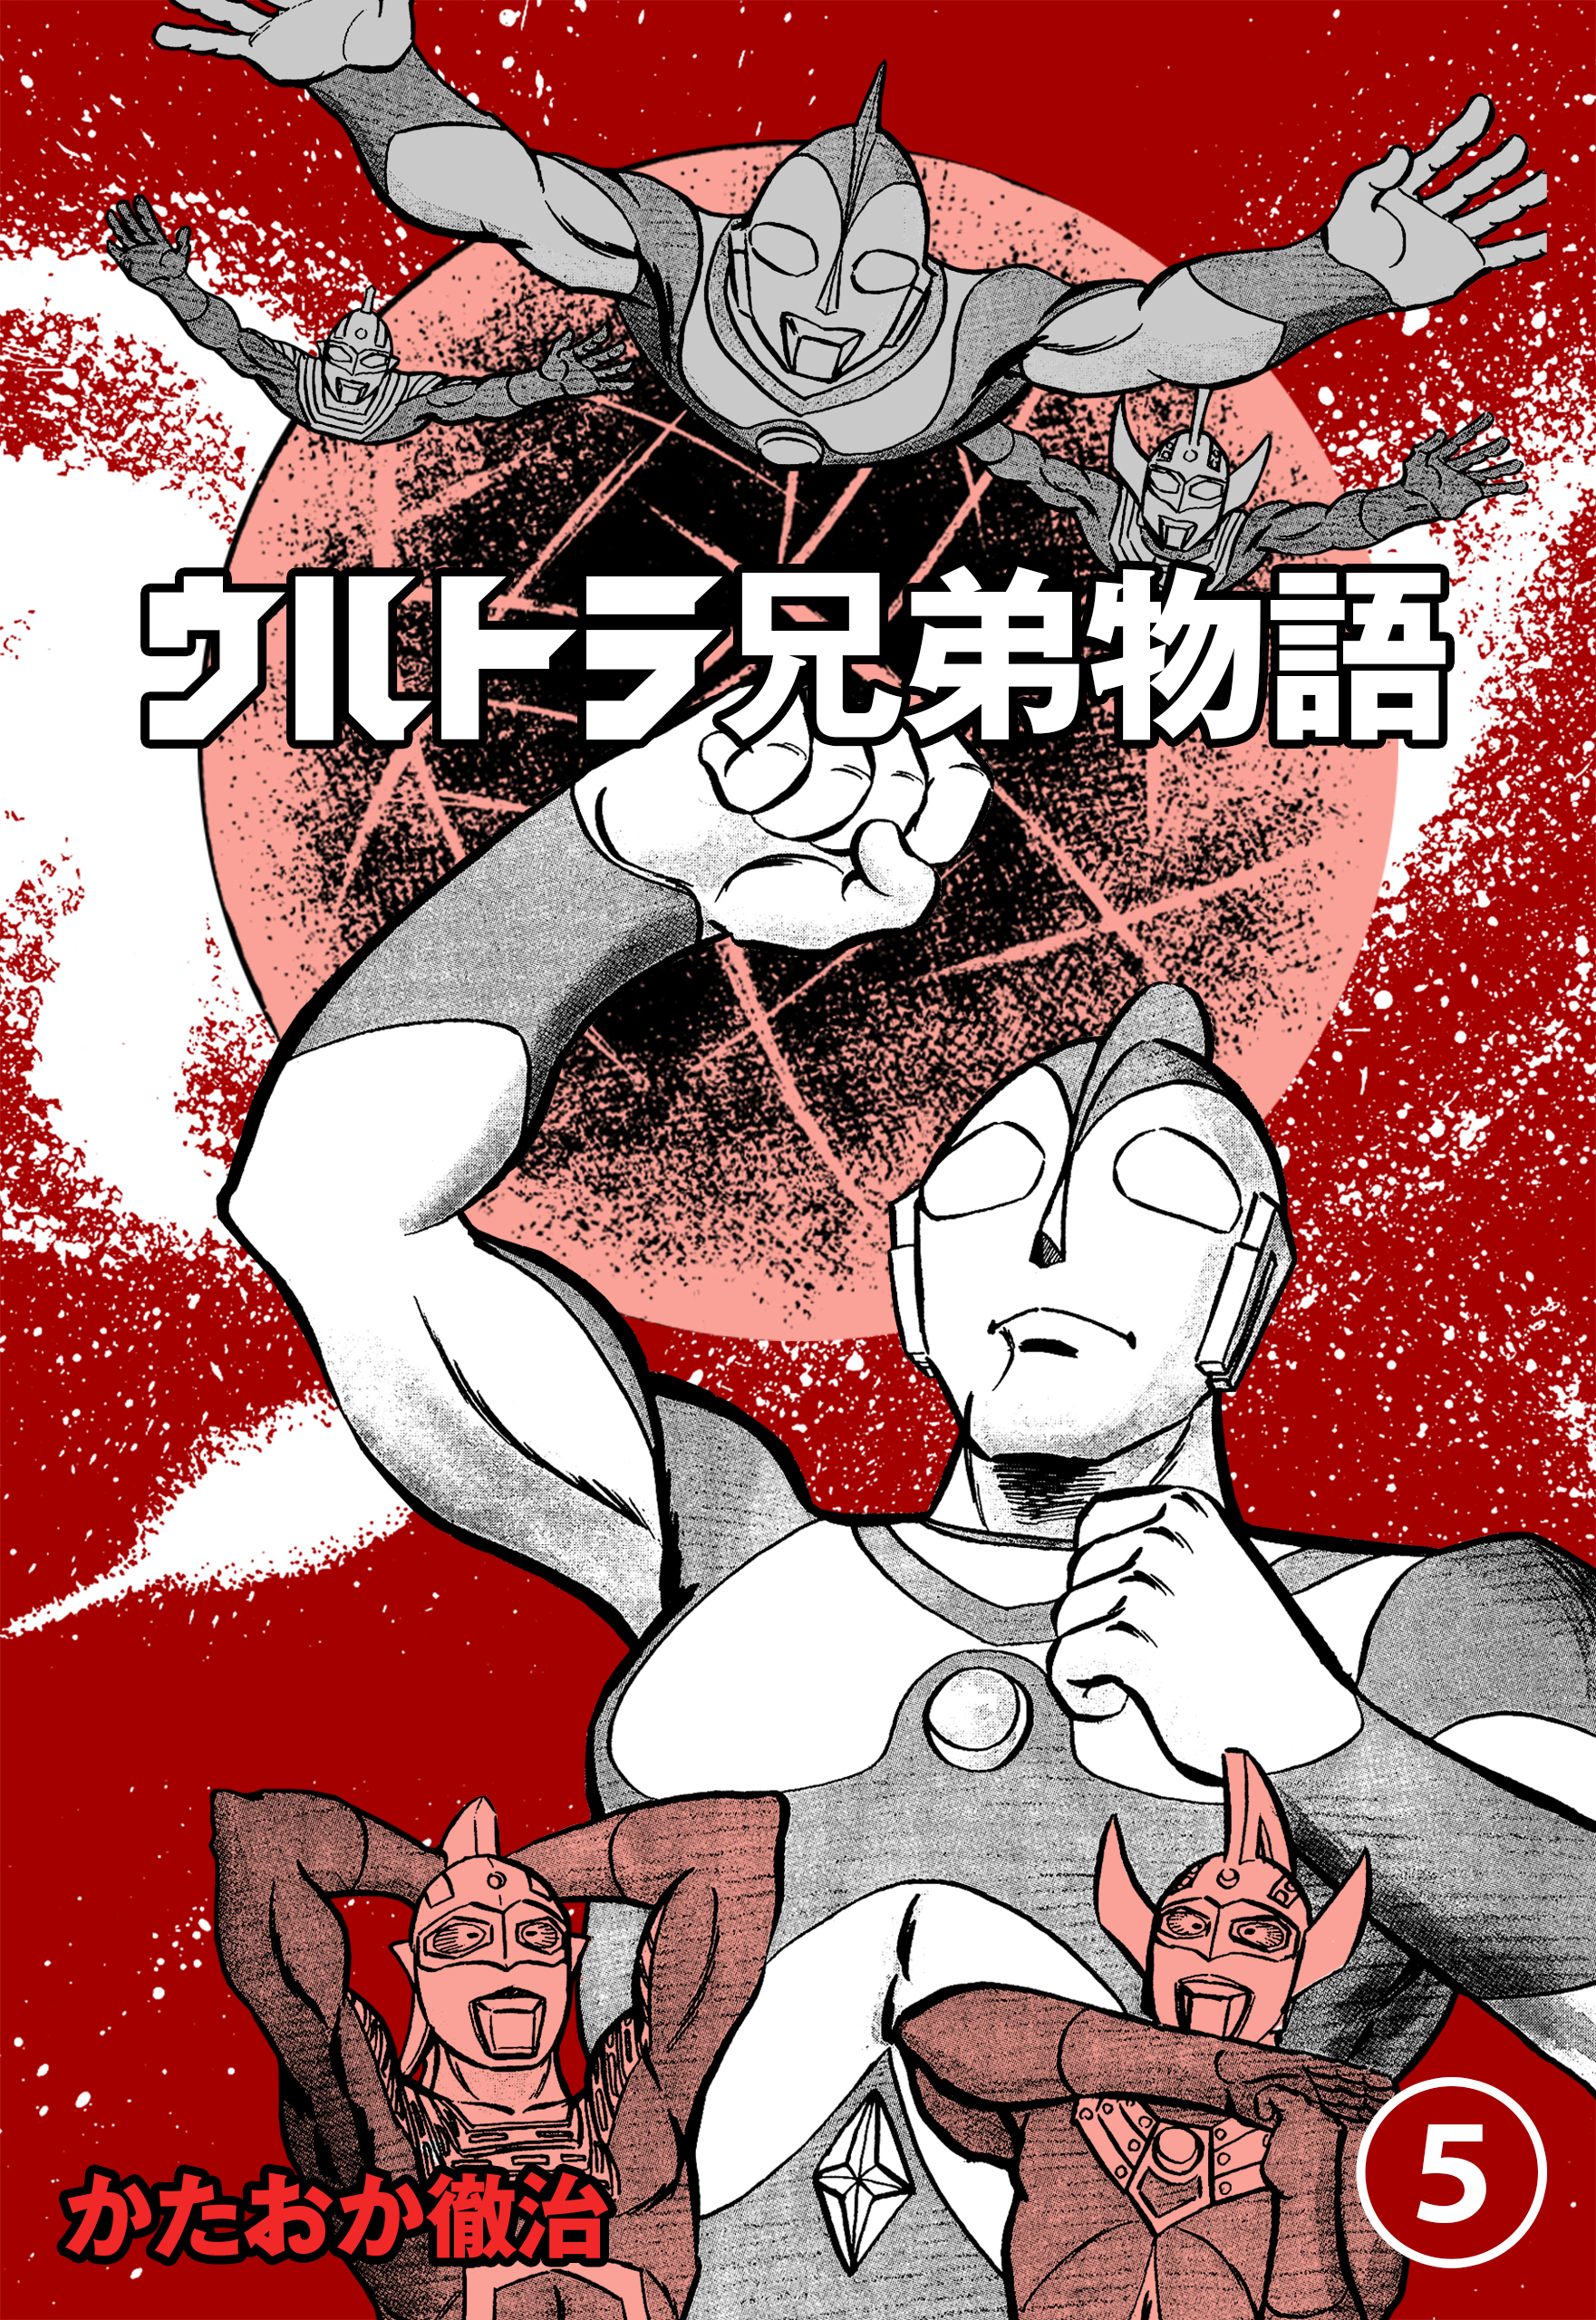 ウルトラ兄弟物語(マンガ) - 電子書籍 | U-NEXT 初回600円分無料